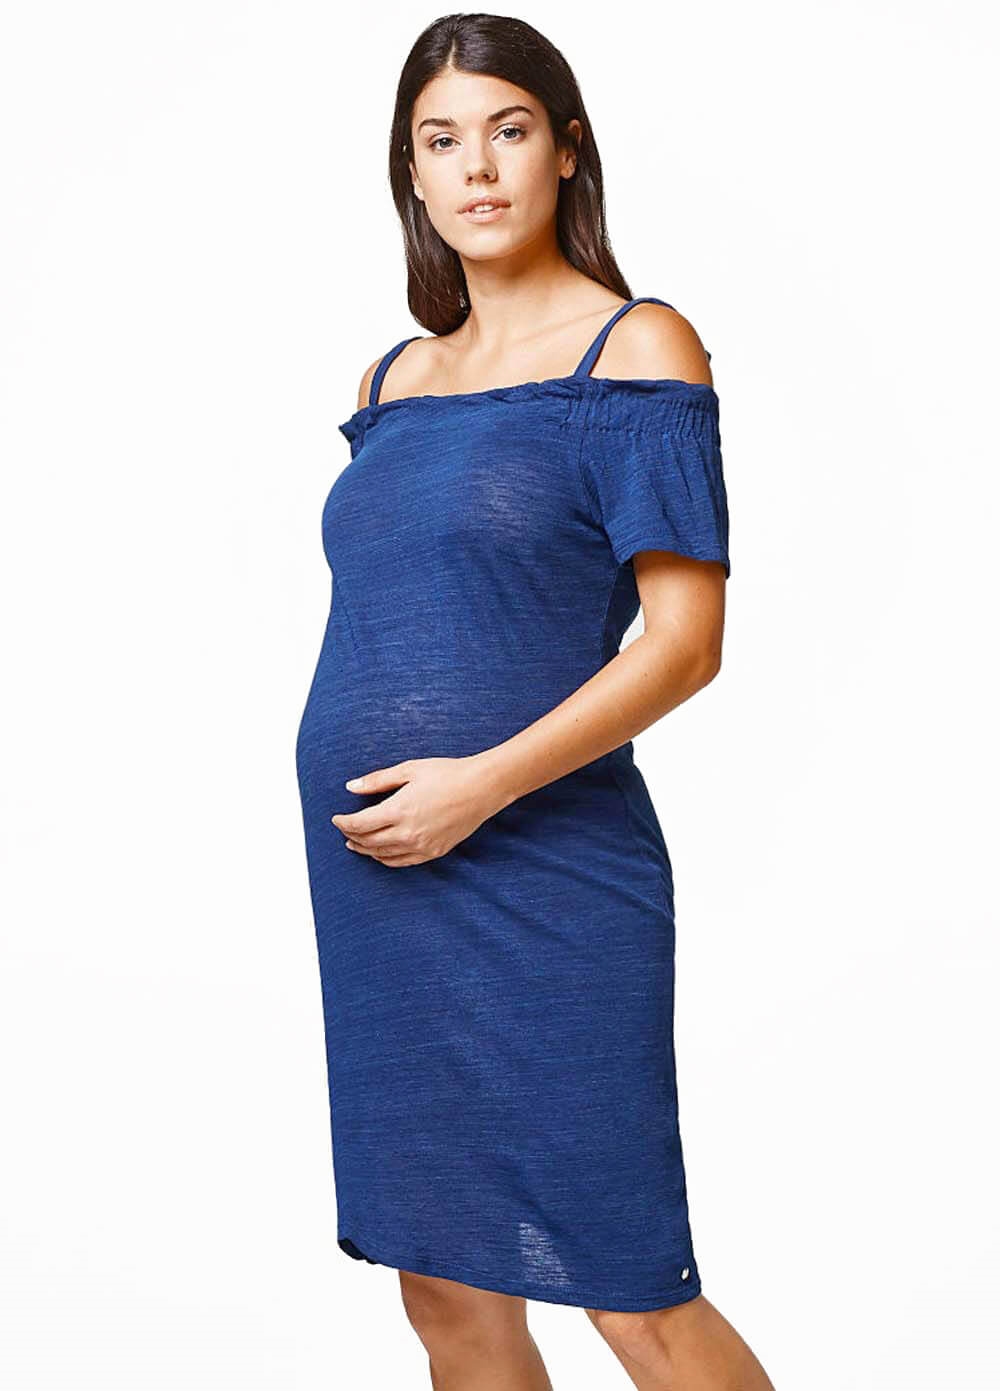 Esprit - Azure Blue Off Shoulder Dress - ON SALE